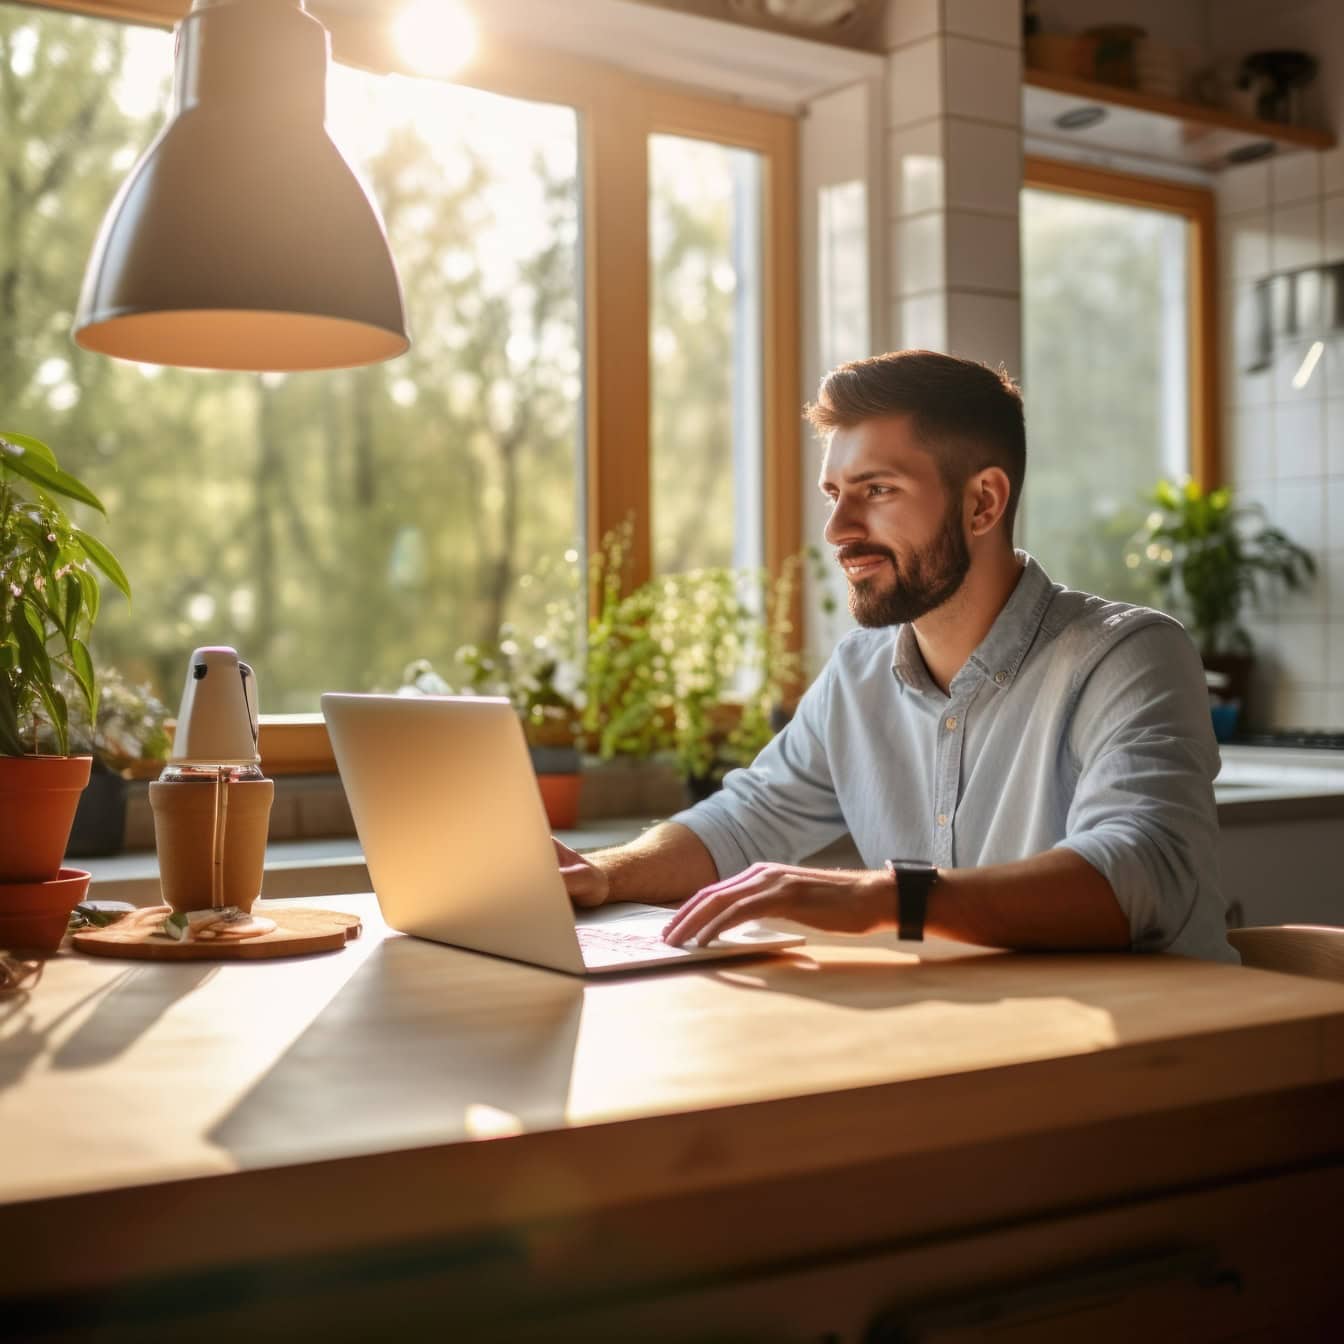 Een freelance man zit aan een keukentafel met een laptop en werkt online op afstand vanuit zijn huis